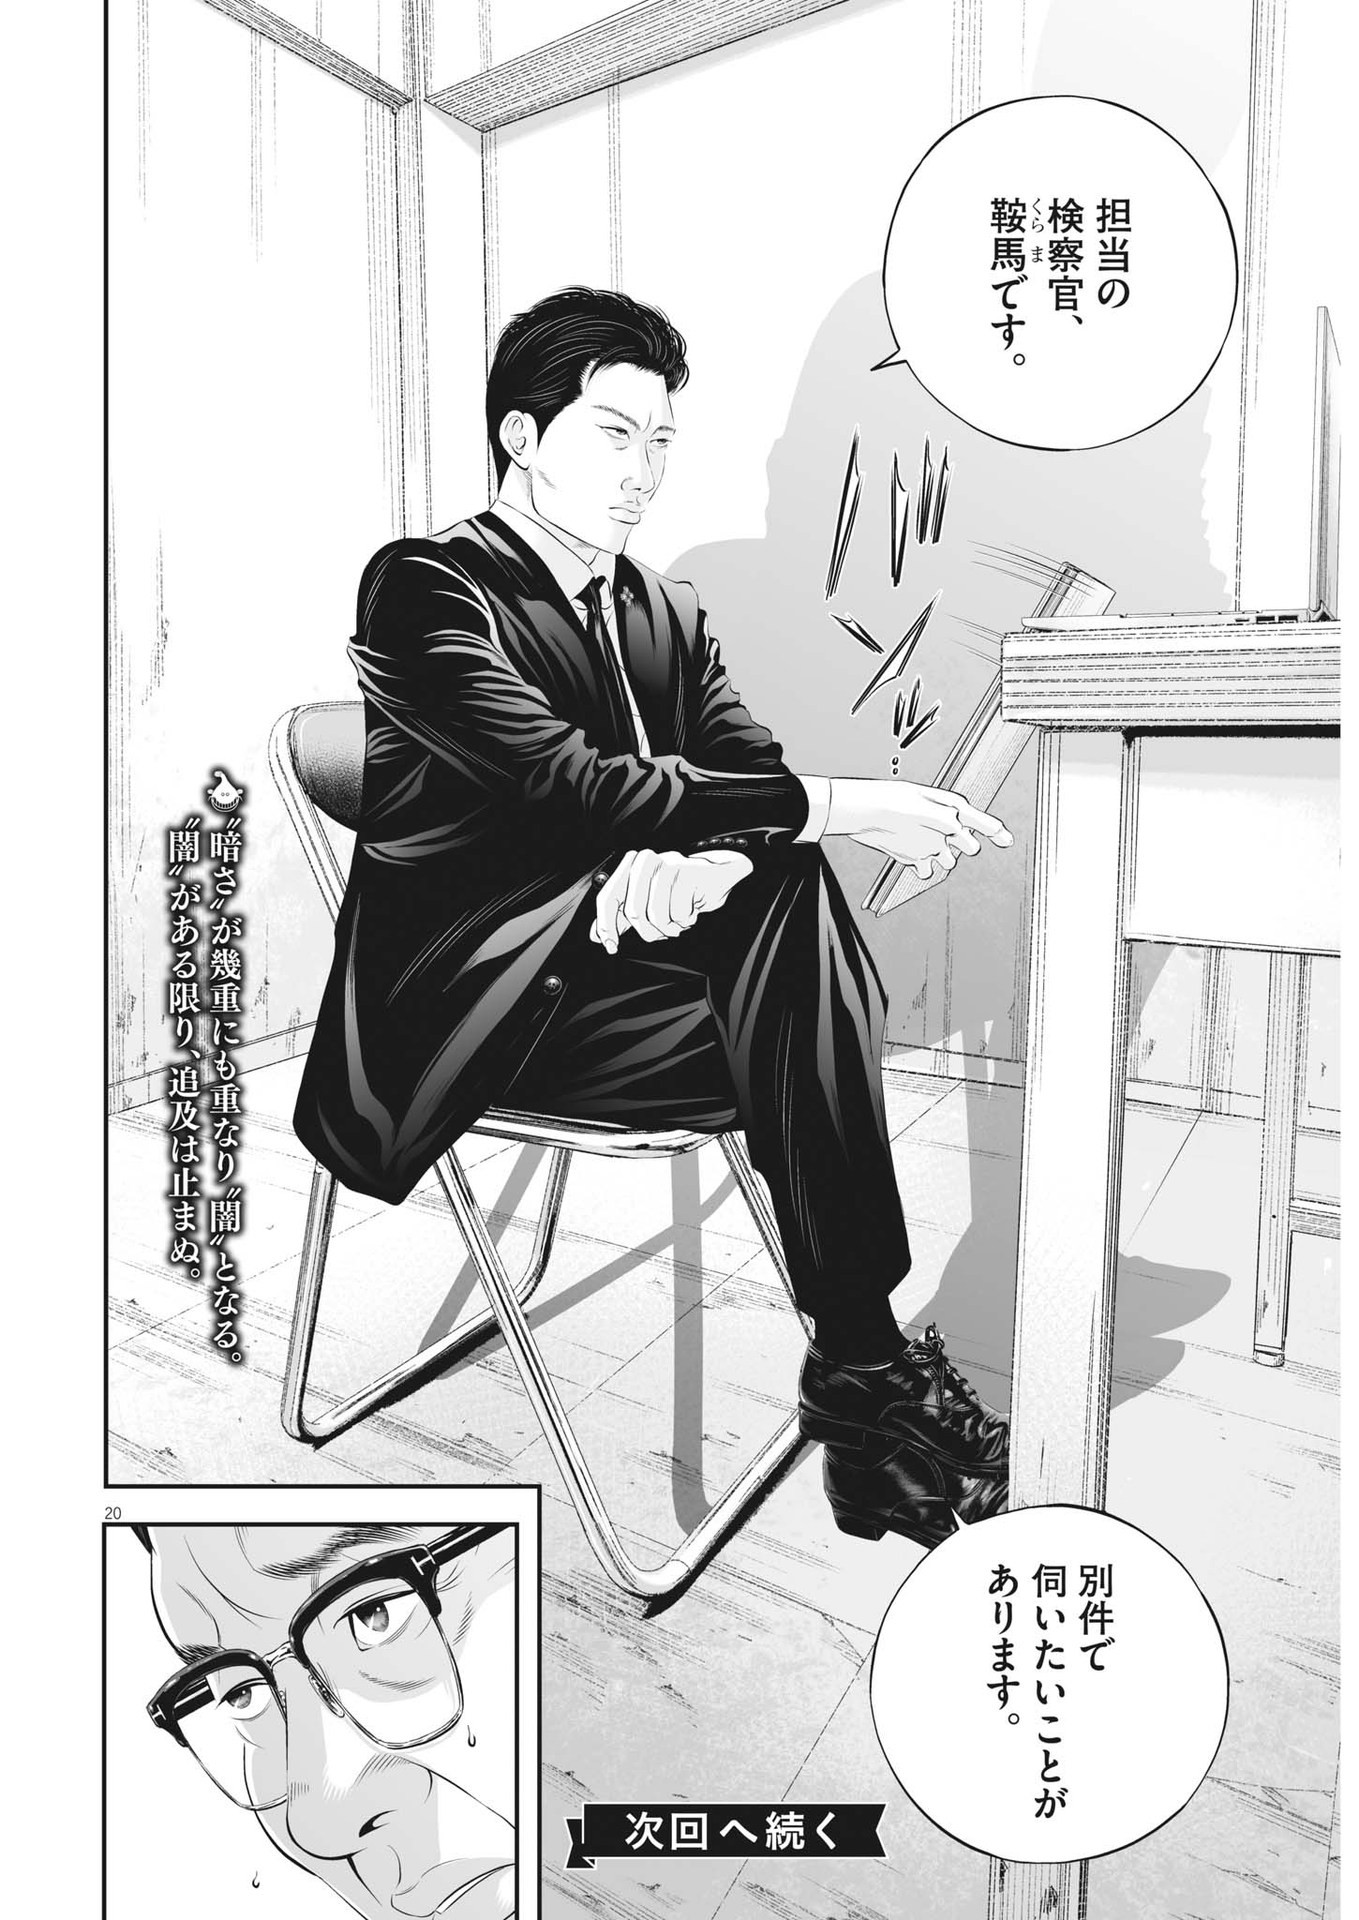 Kujou no Taizai - Chapter 97 - Page 20